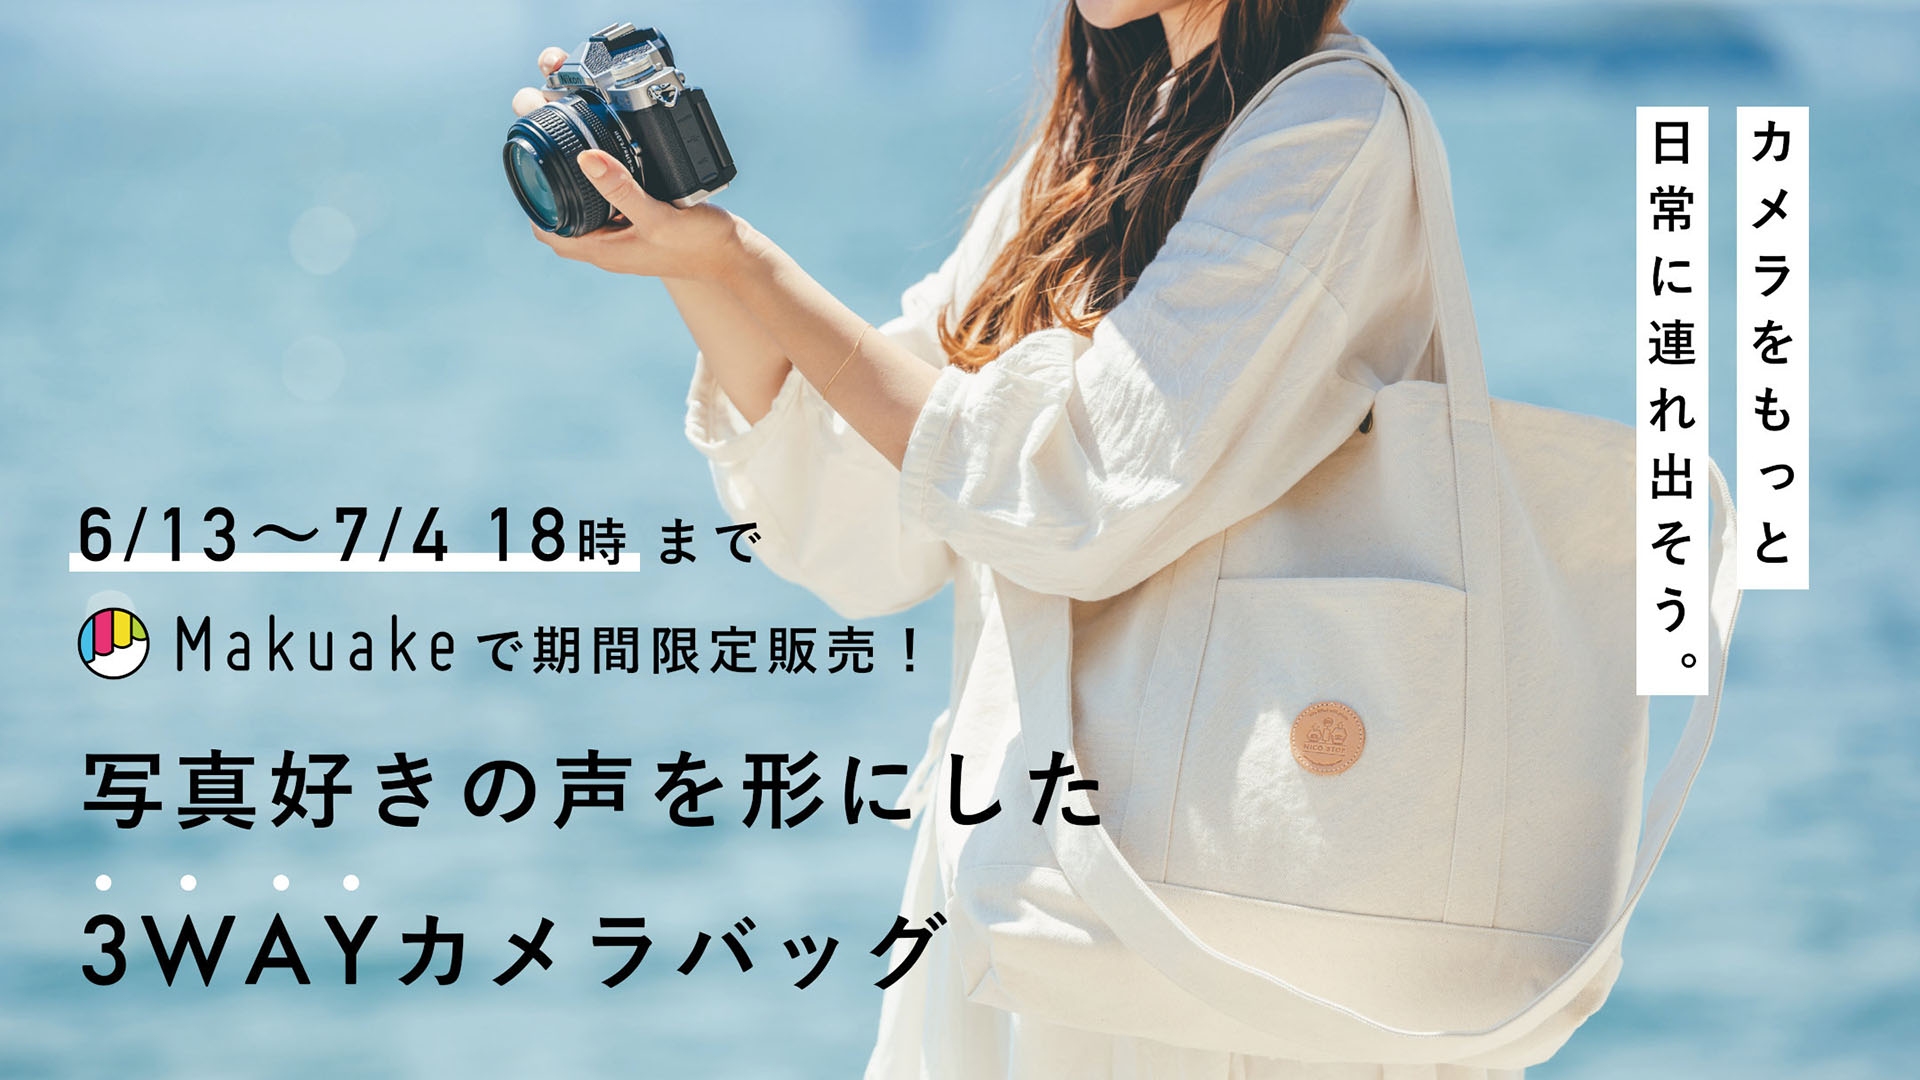 【美品】NIKON D5300＋レンズ3本セット＋カメラバッグ